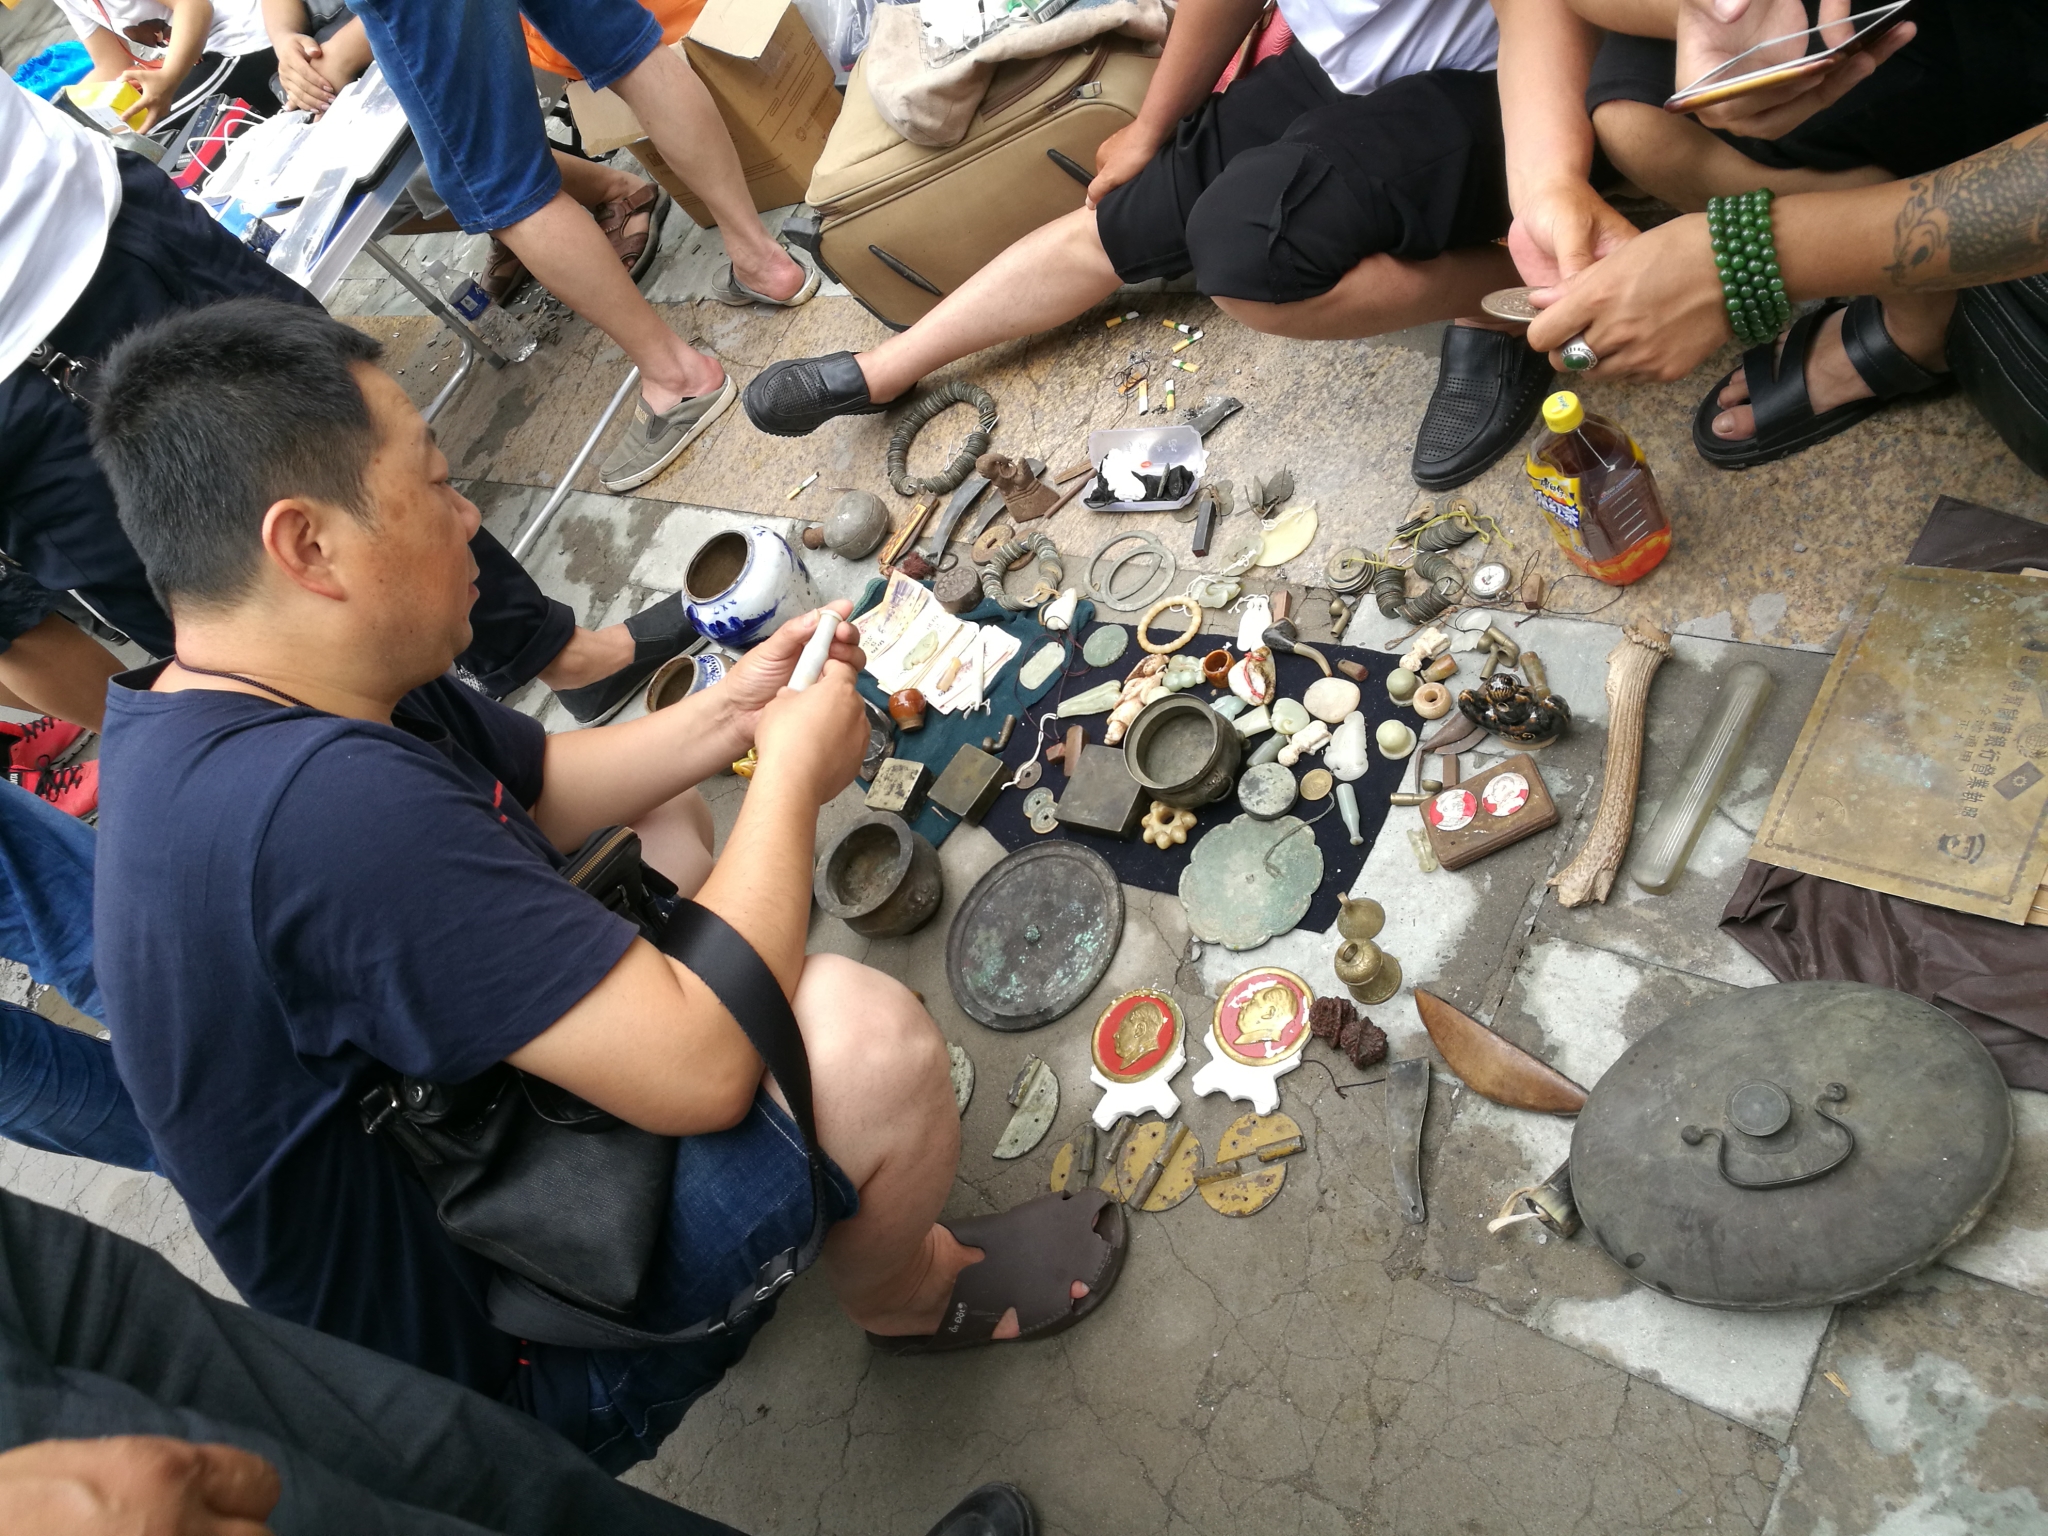 安徽铜陵铜工艺品市场图片